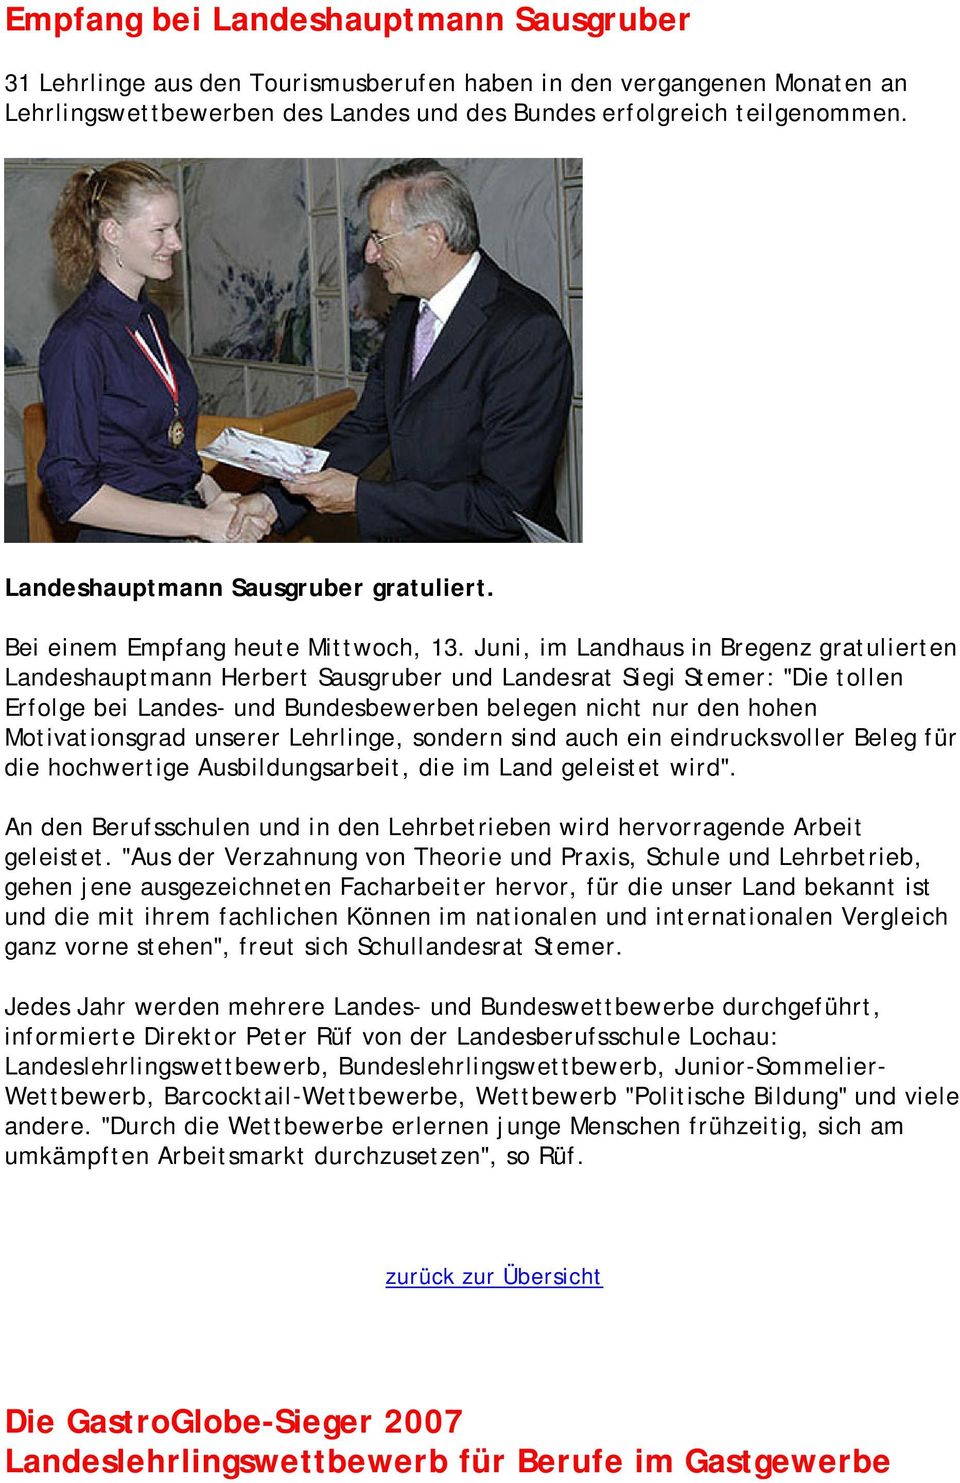 Juni, im Landhaus in Bregenz gratulierten Landeshauptmann Herbert Sausgruber und Landesrat Siegi Stemer: "Die tollen Erfolge bei Landes- und Bundesbewerben belegen nicht nur den hohen Motivationsgrad